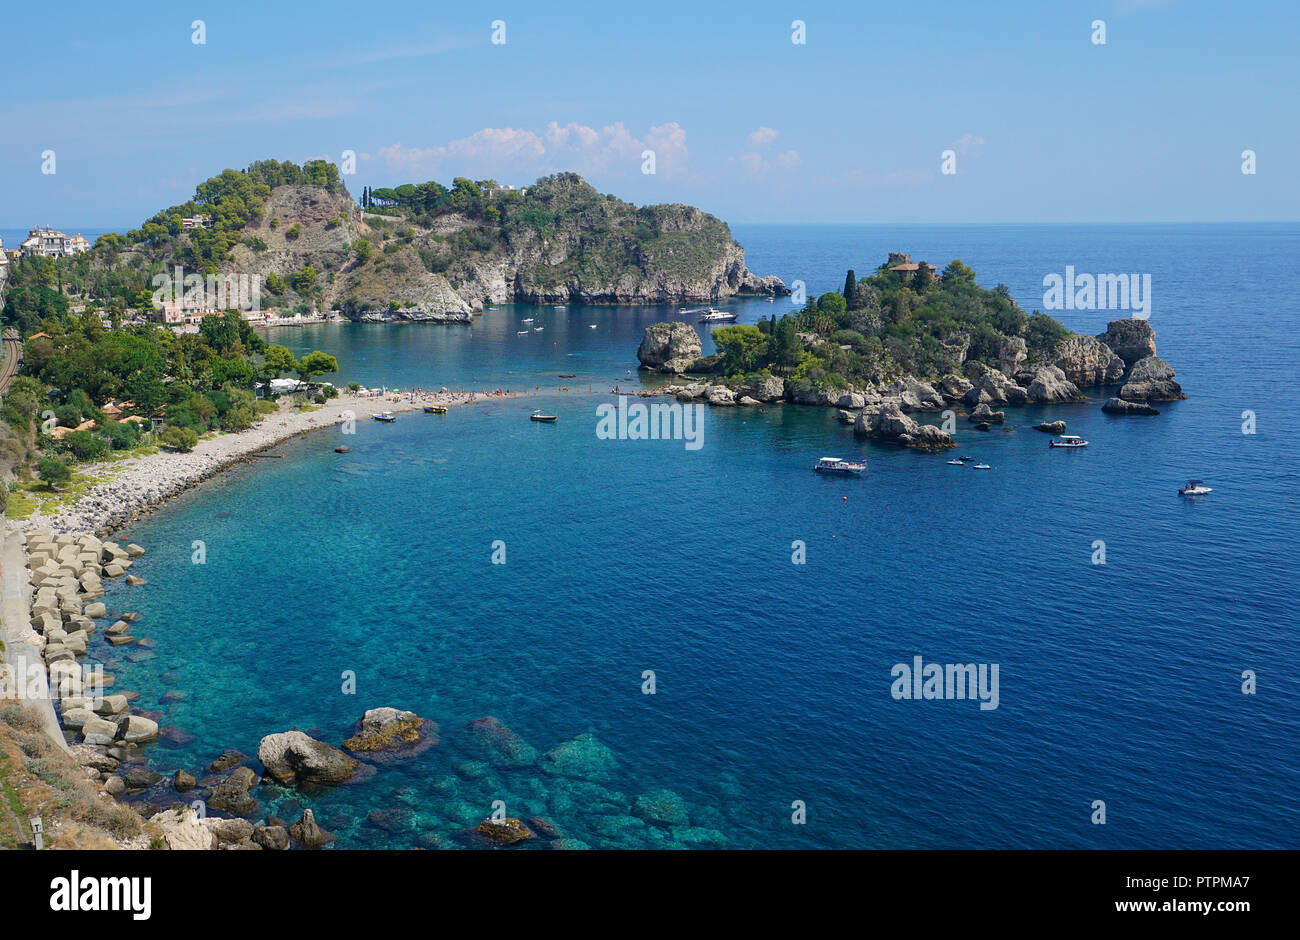 Isola Bella, belle petite île et l'un des monuments de Taormina, Sicile, Italie Banque D'Images